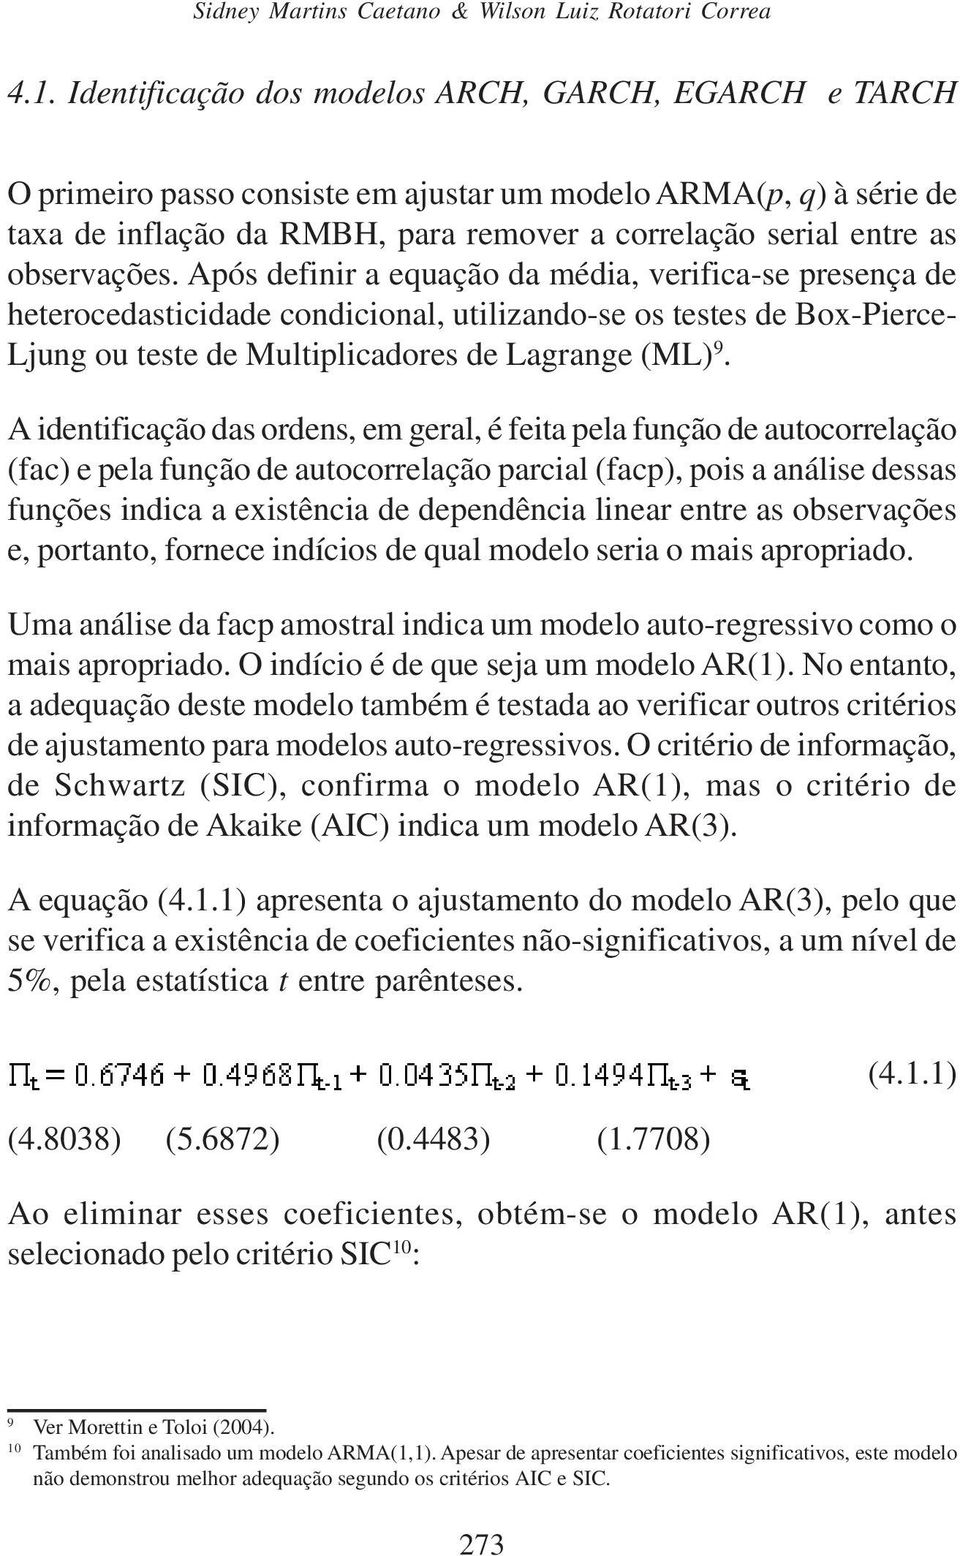 observações. Após definir a equação da média, verifica-se presença de heterocedasticidade condicional, utilizando-se os testes de Box-Pierce- Ljung ou teste de Multiplicadores de Lagrange (ML) 9.